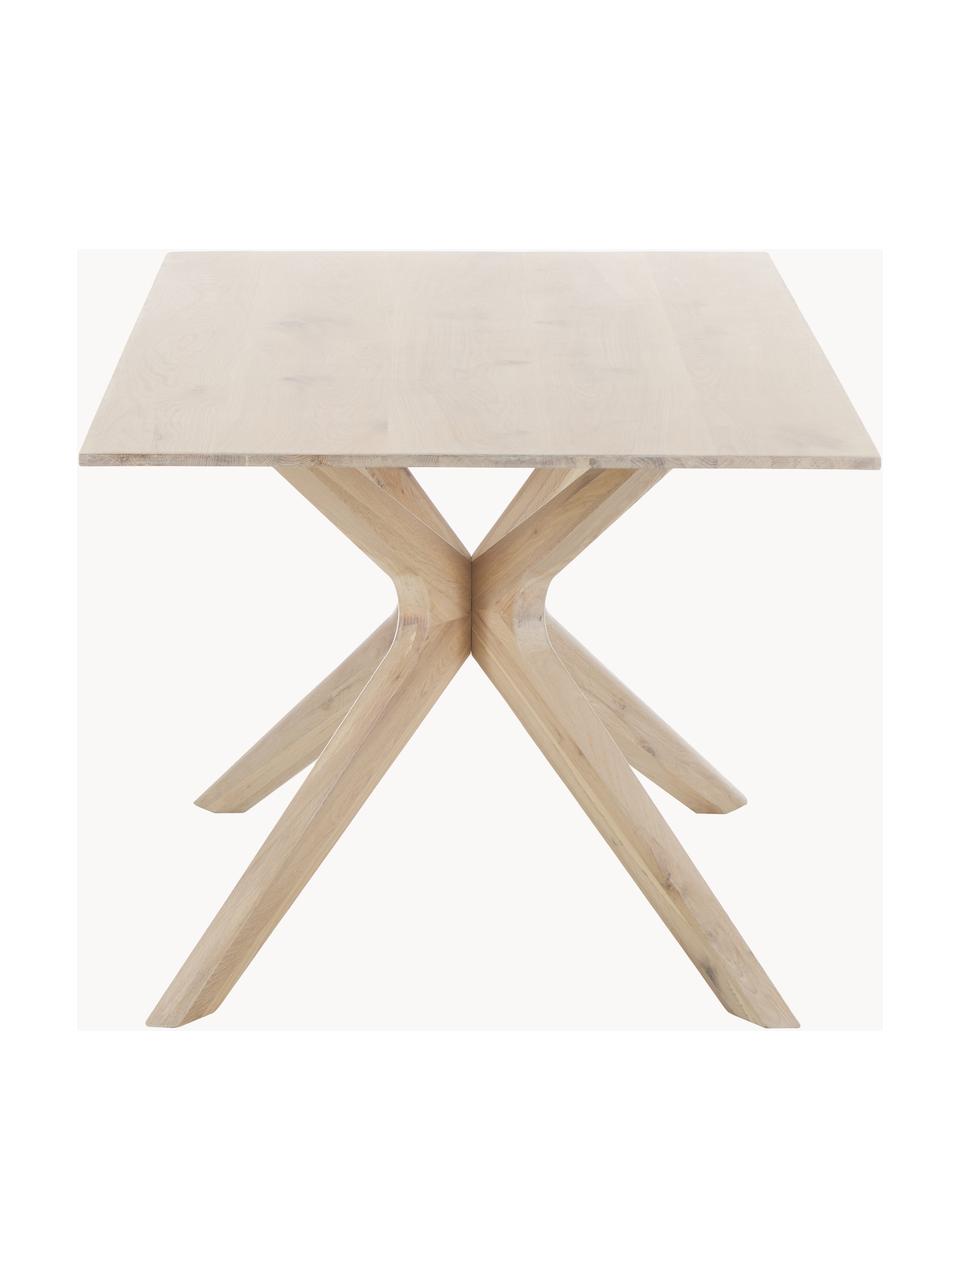 Jídelní stůl z dubového dřeva Armande, 180 x 90 cm, Dubové dřevo, voskované, natřené bílou barvou, Dub, Š 180 cm, H 90 cm